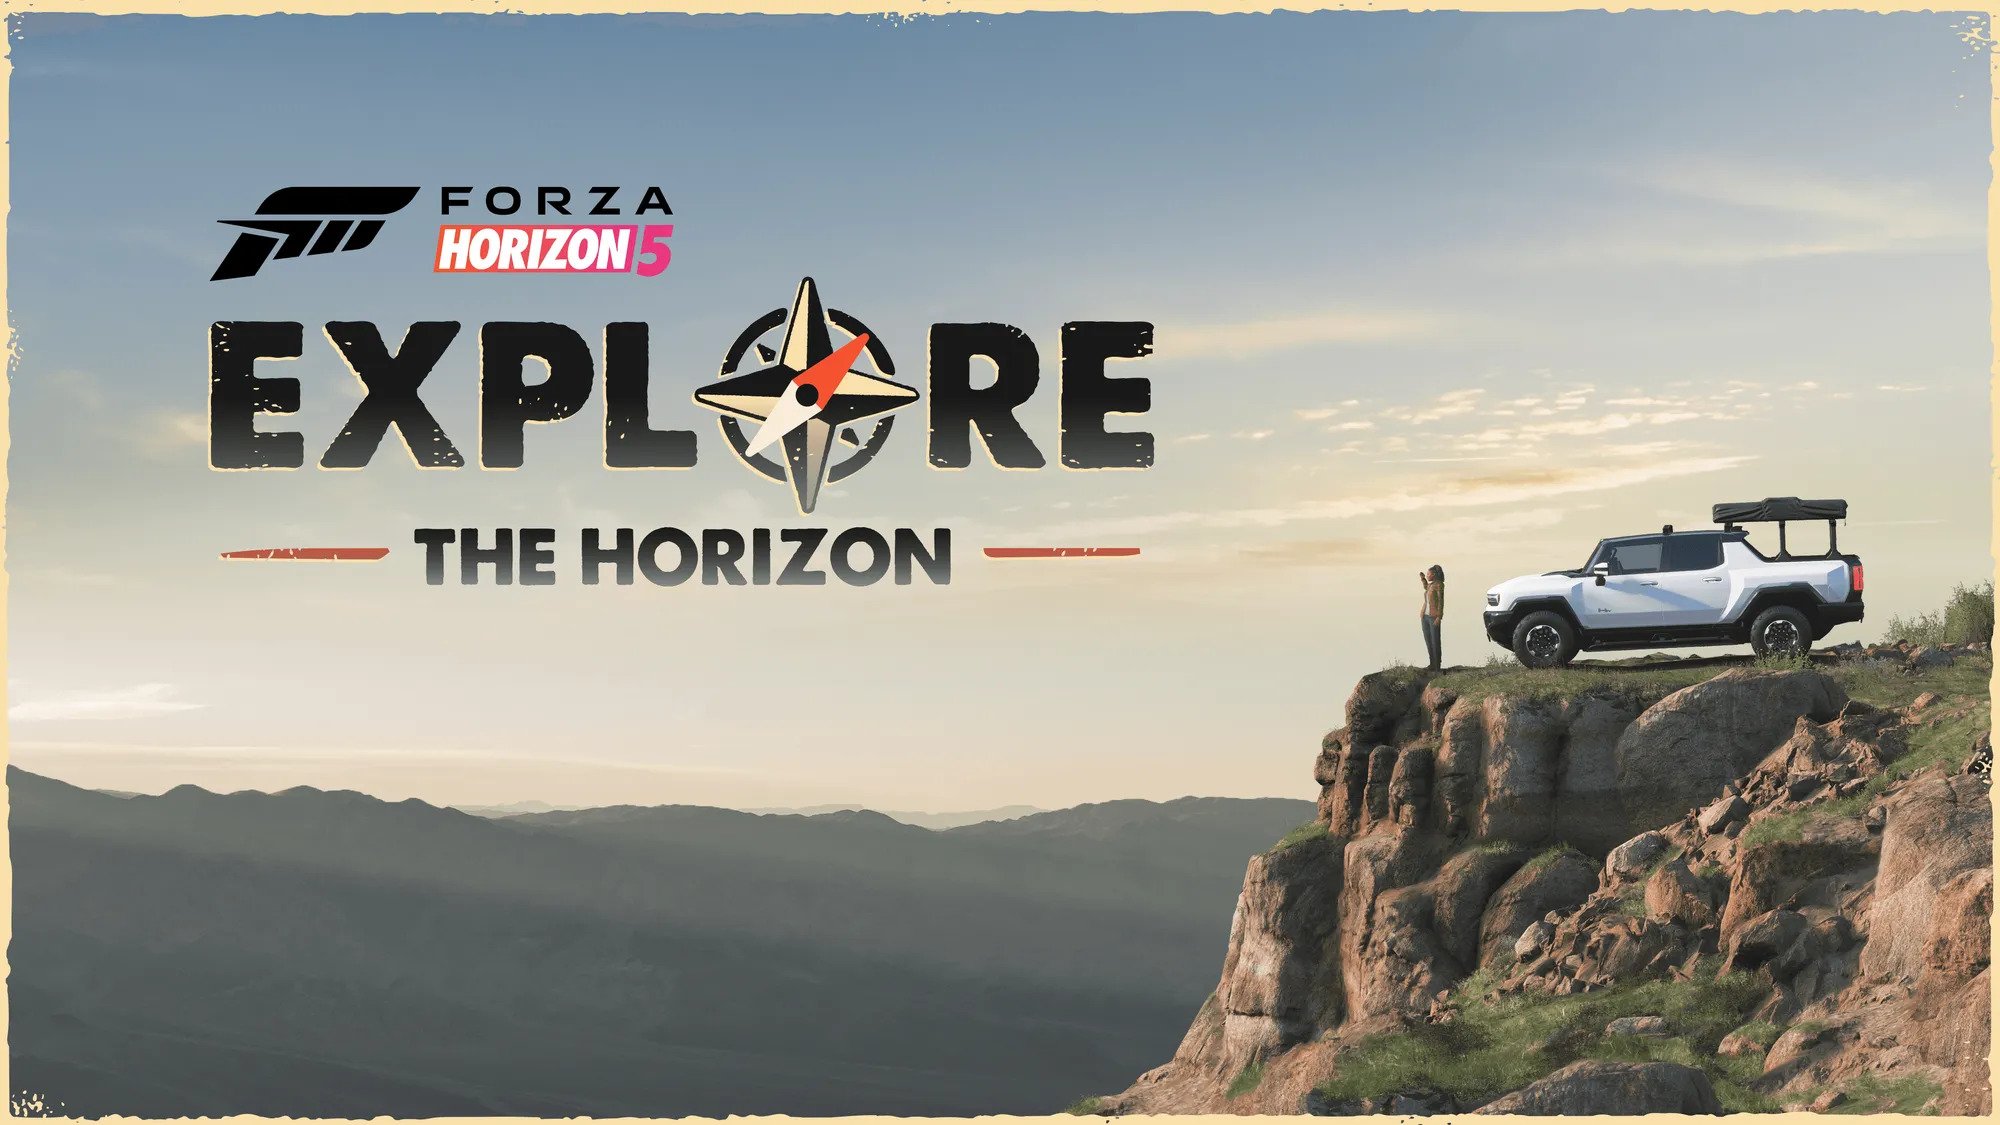 Forza Horizon 5's New Major Update